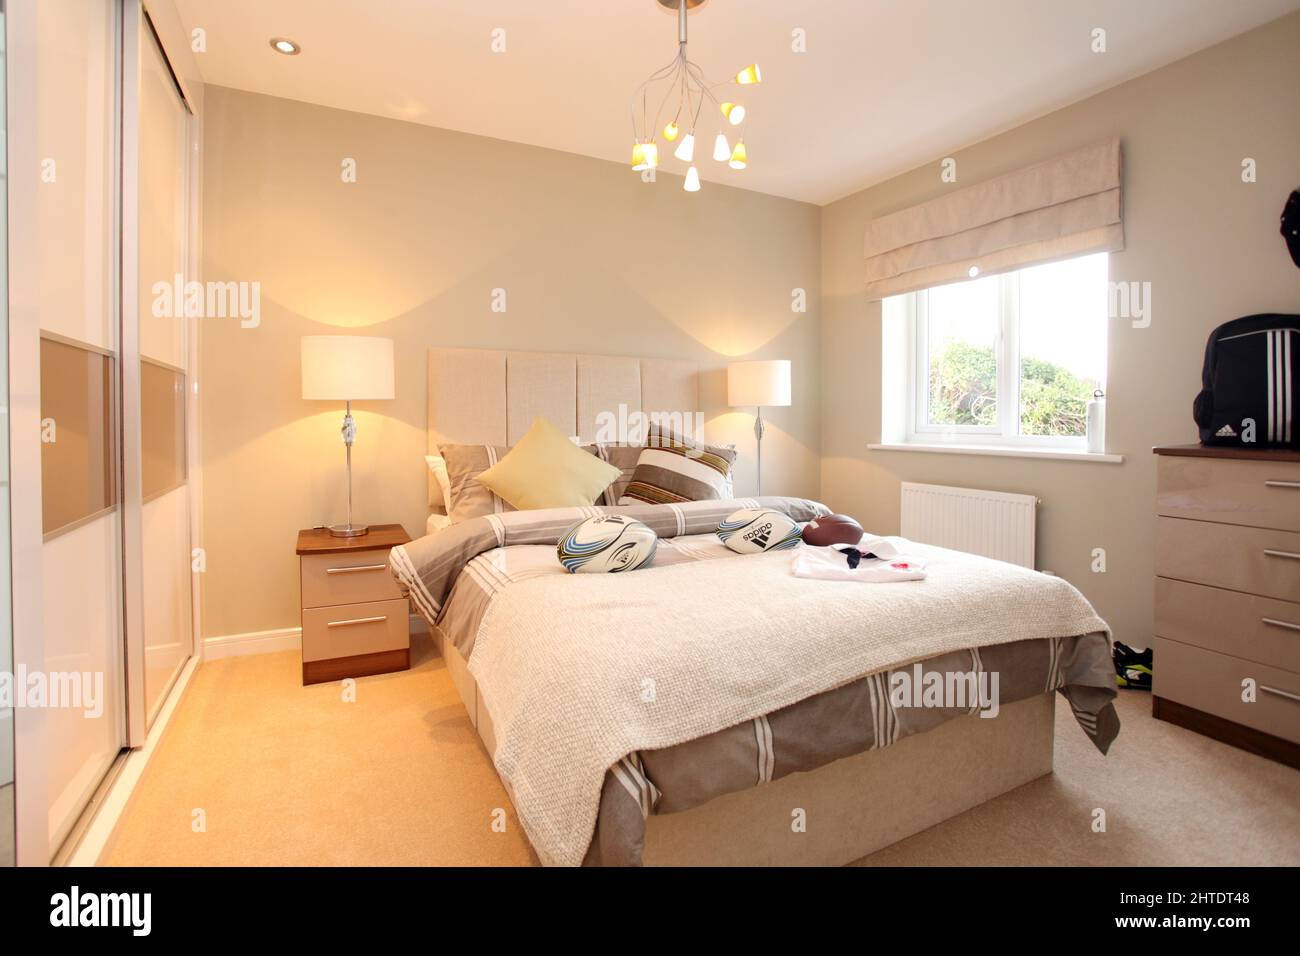 Chambre moderne pour garçons dans une nouvelle maison, thème rugby, couvre-lit, beige, tons neutres, tête de lit rembourrée, ballons de rugby, chambre pour garçons, Banque D'Images